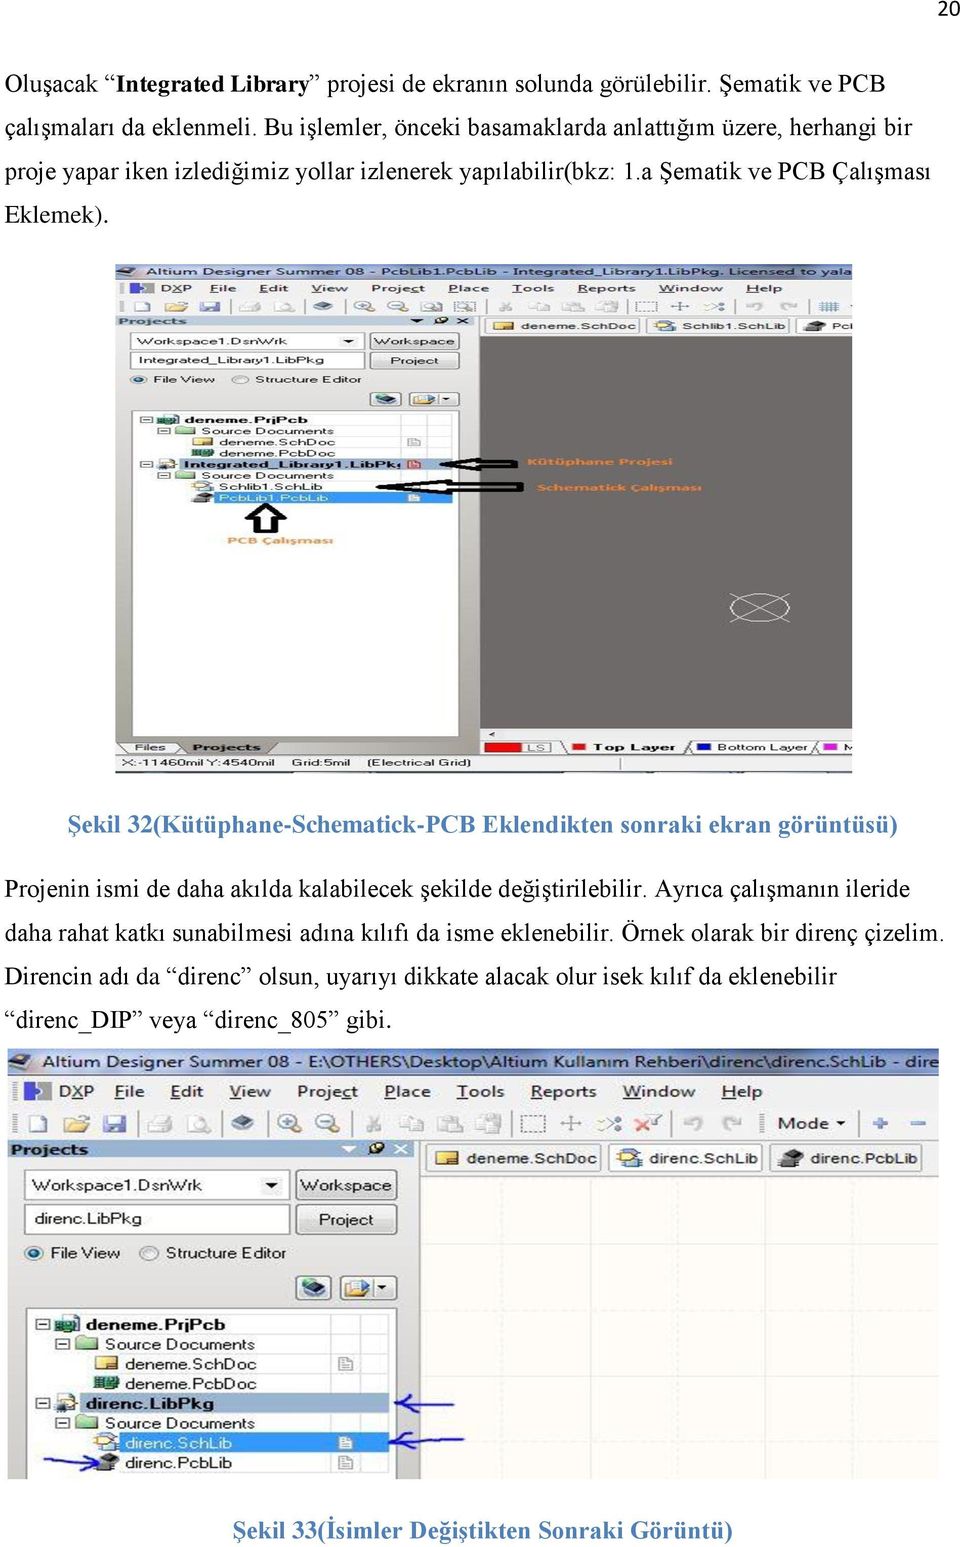 ġekil 32(Kütüphane-Schematick-PCB Eklendikten sonraki ekran görüntüsü) Projenin ismi de daha akılda kalabilecek şekilde değiştirilebilir.